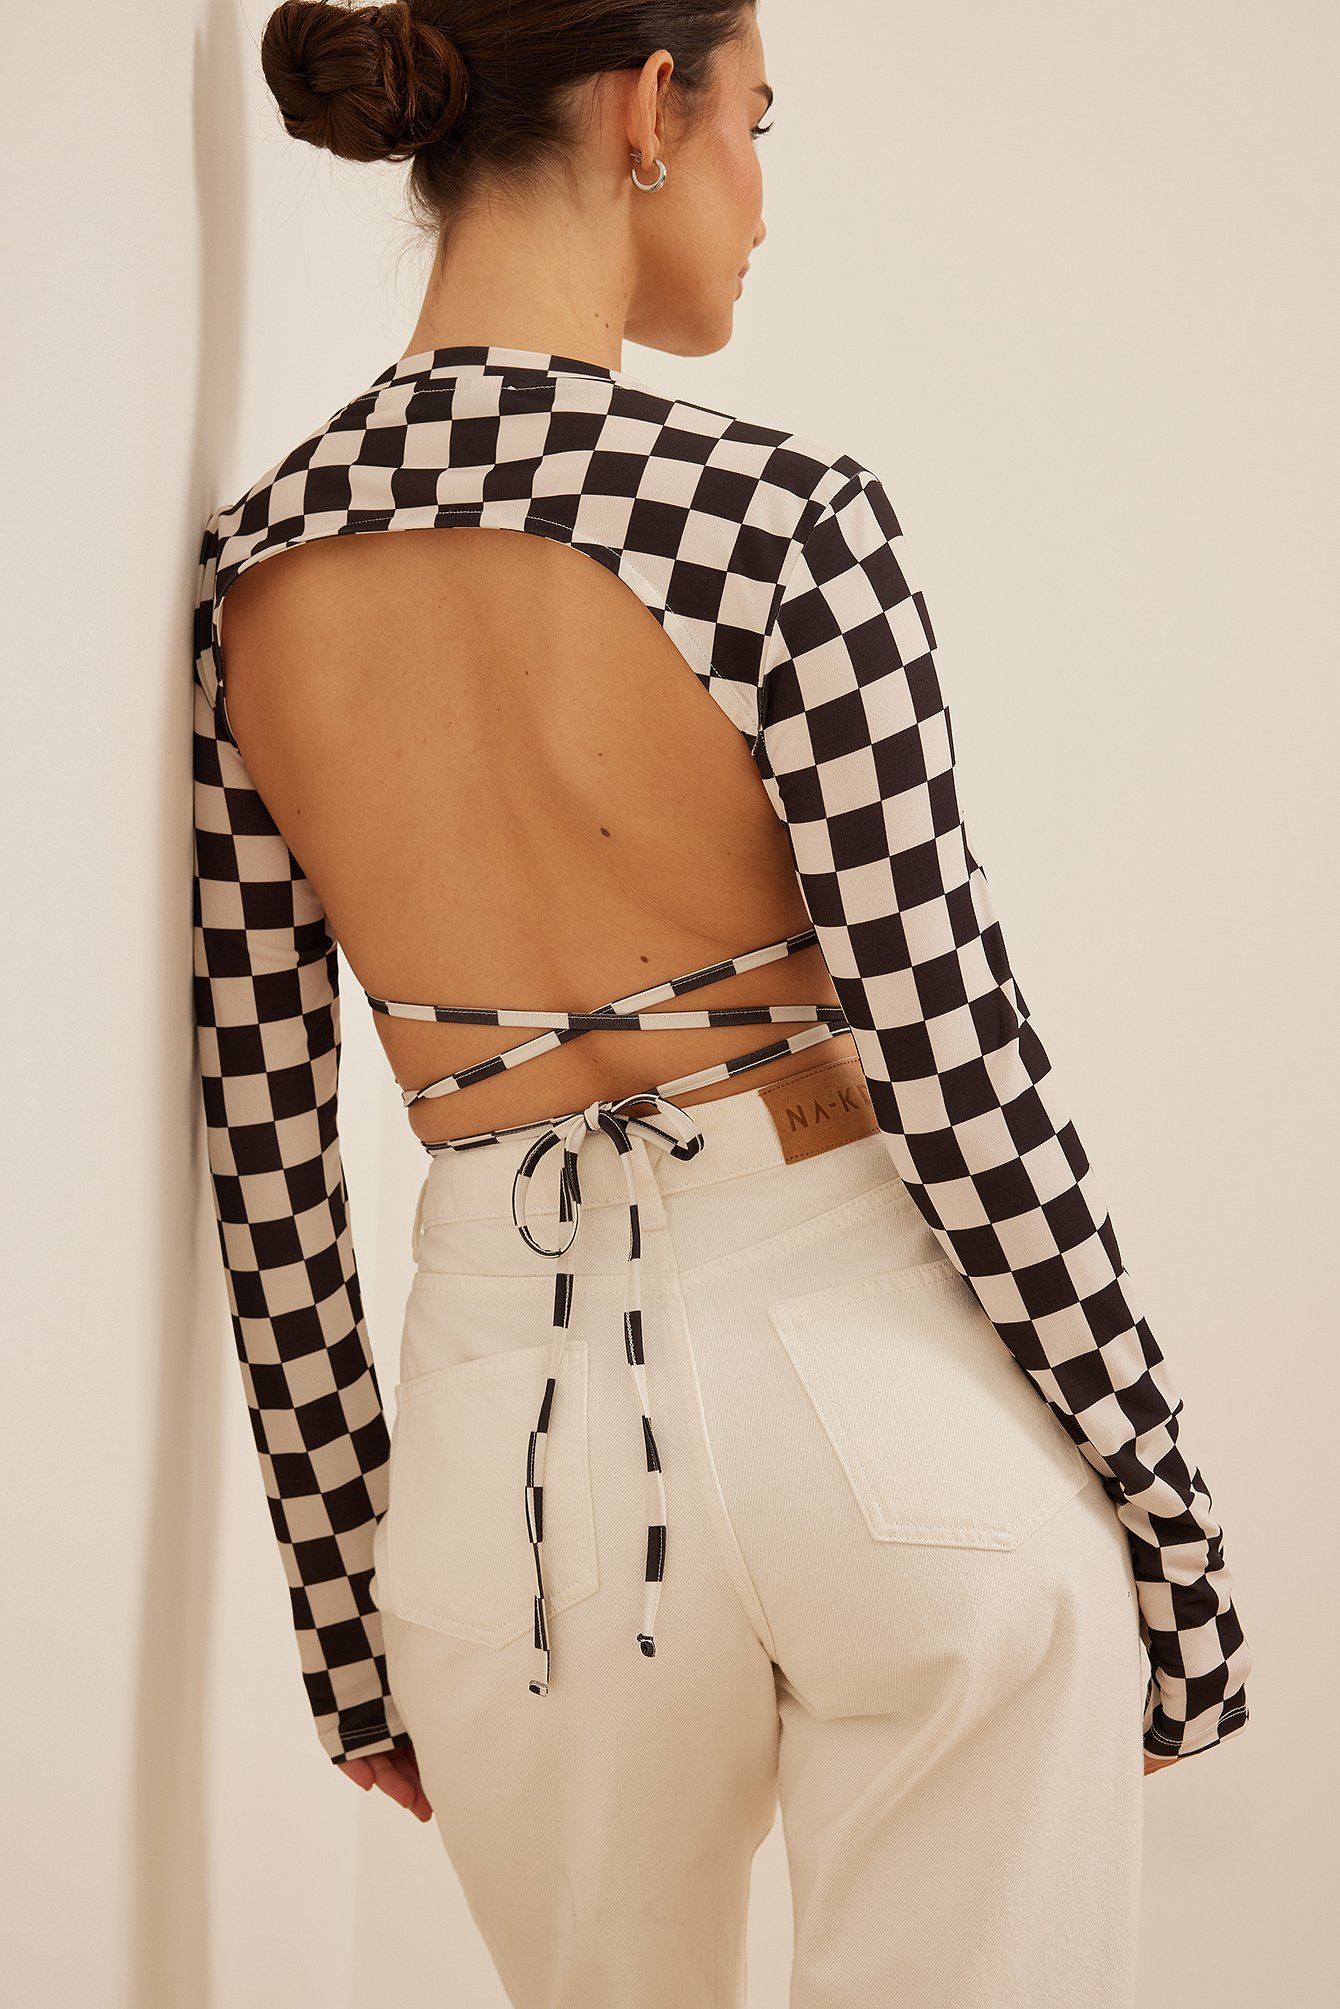 Lena Tamburini x NA-KD Open Back Tie Detail Top - Checkered